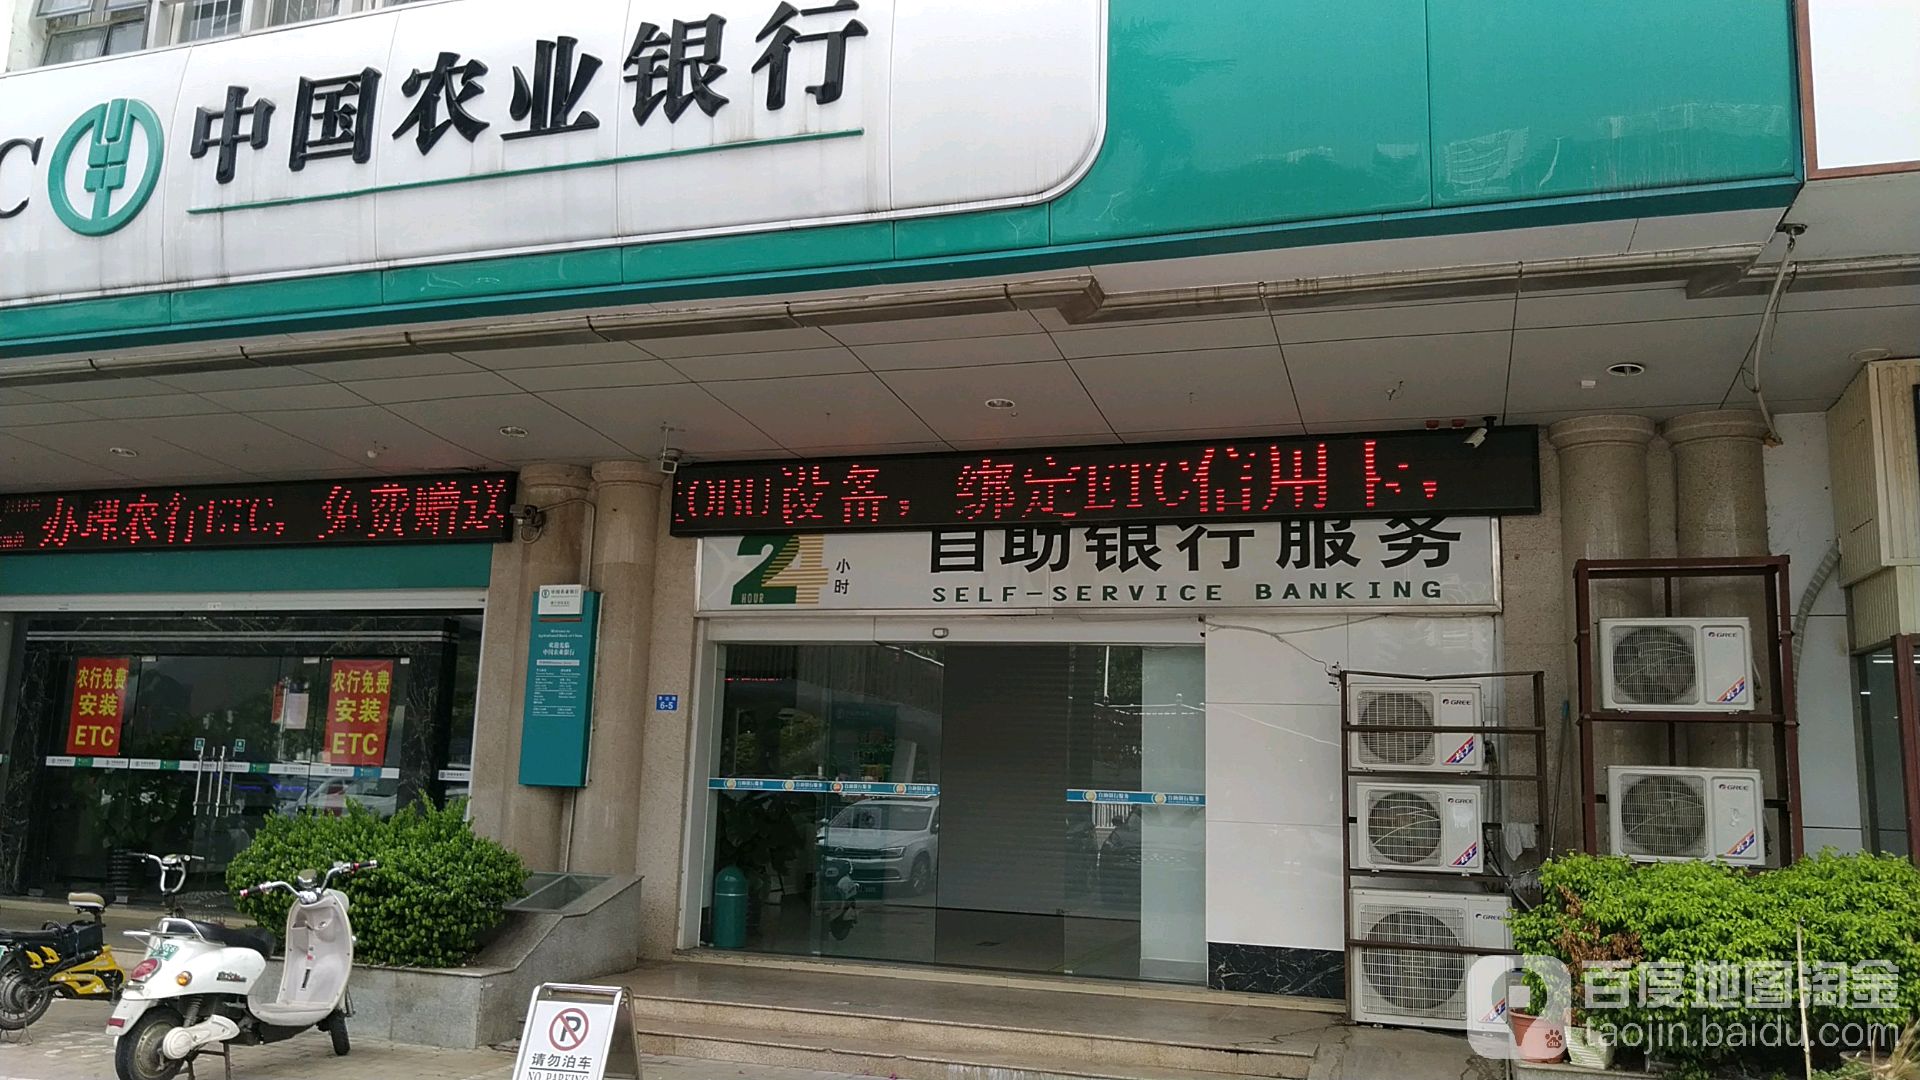 中國農業銀行24小時自助銀行服務(南寧青山支行)